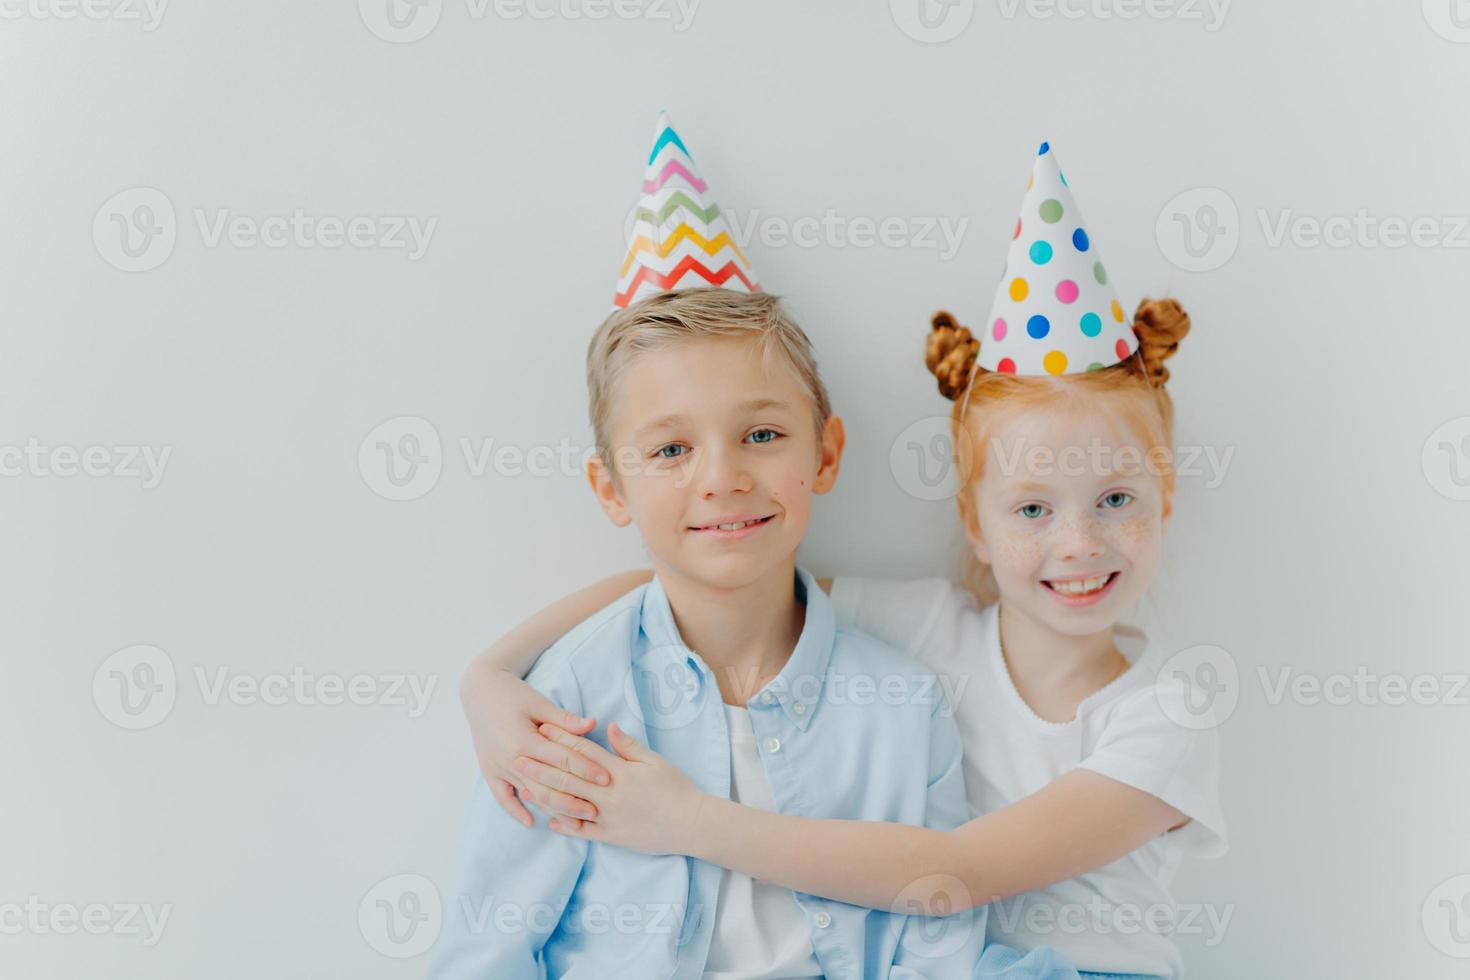 linda garota ruiva abraça com amor seu irmão mais velho, parabeniza pelo aniversário, usa chapéus de festa de cone, tem bom humor na festa, isolado sobre fundo branco, tem relacionamento amigável foto